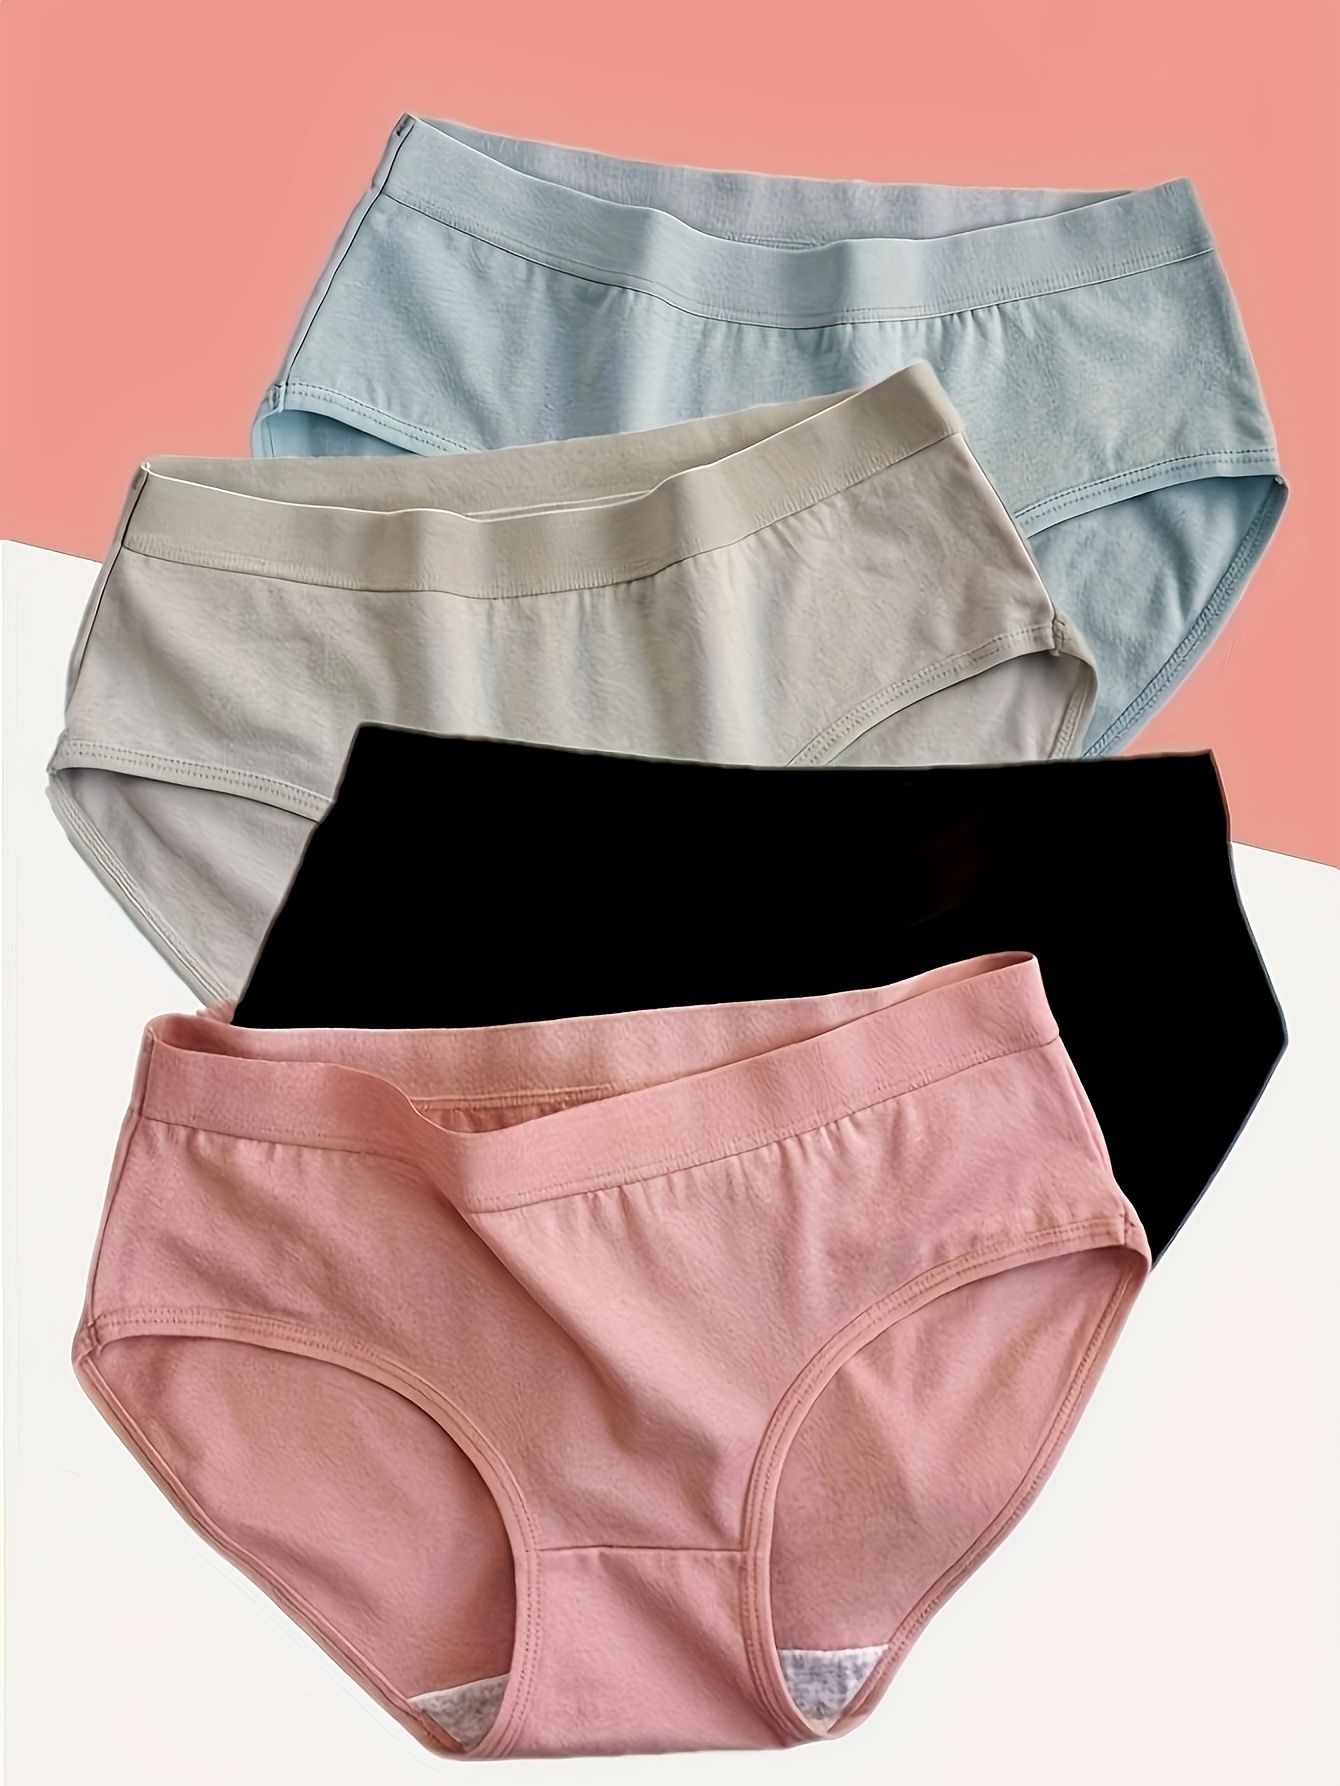 wendunide womens underwear Women Cotton File Lifting Boxer Panties Women  Anti Glare Leggings Women's Panties Hot Pink M